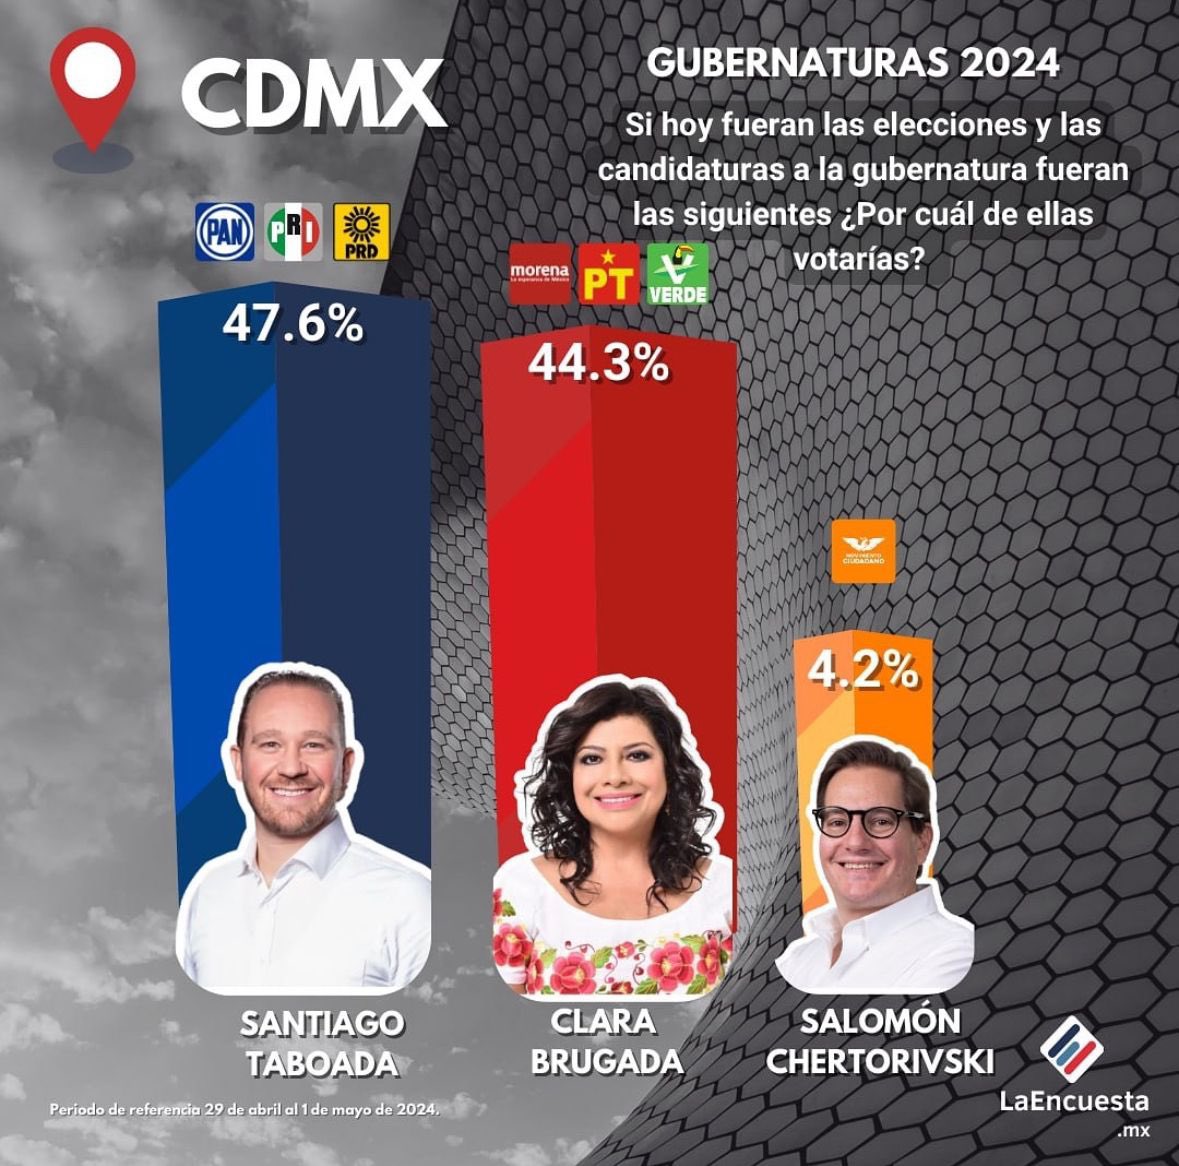 Ya 3 encuestas lo dicen. @STaboadaMx será el próximo jefe de gobierno. ¡Morena ya se va!